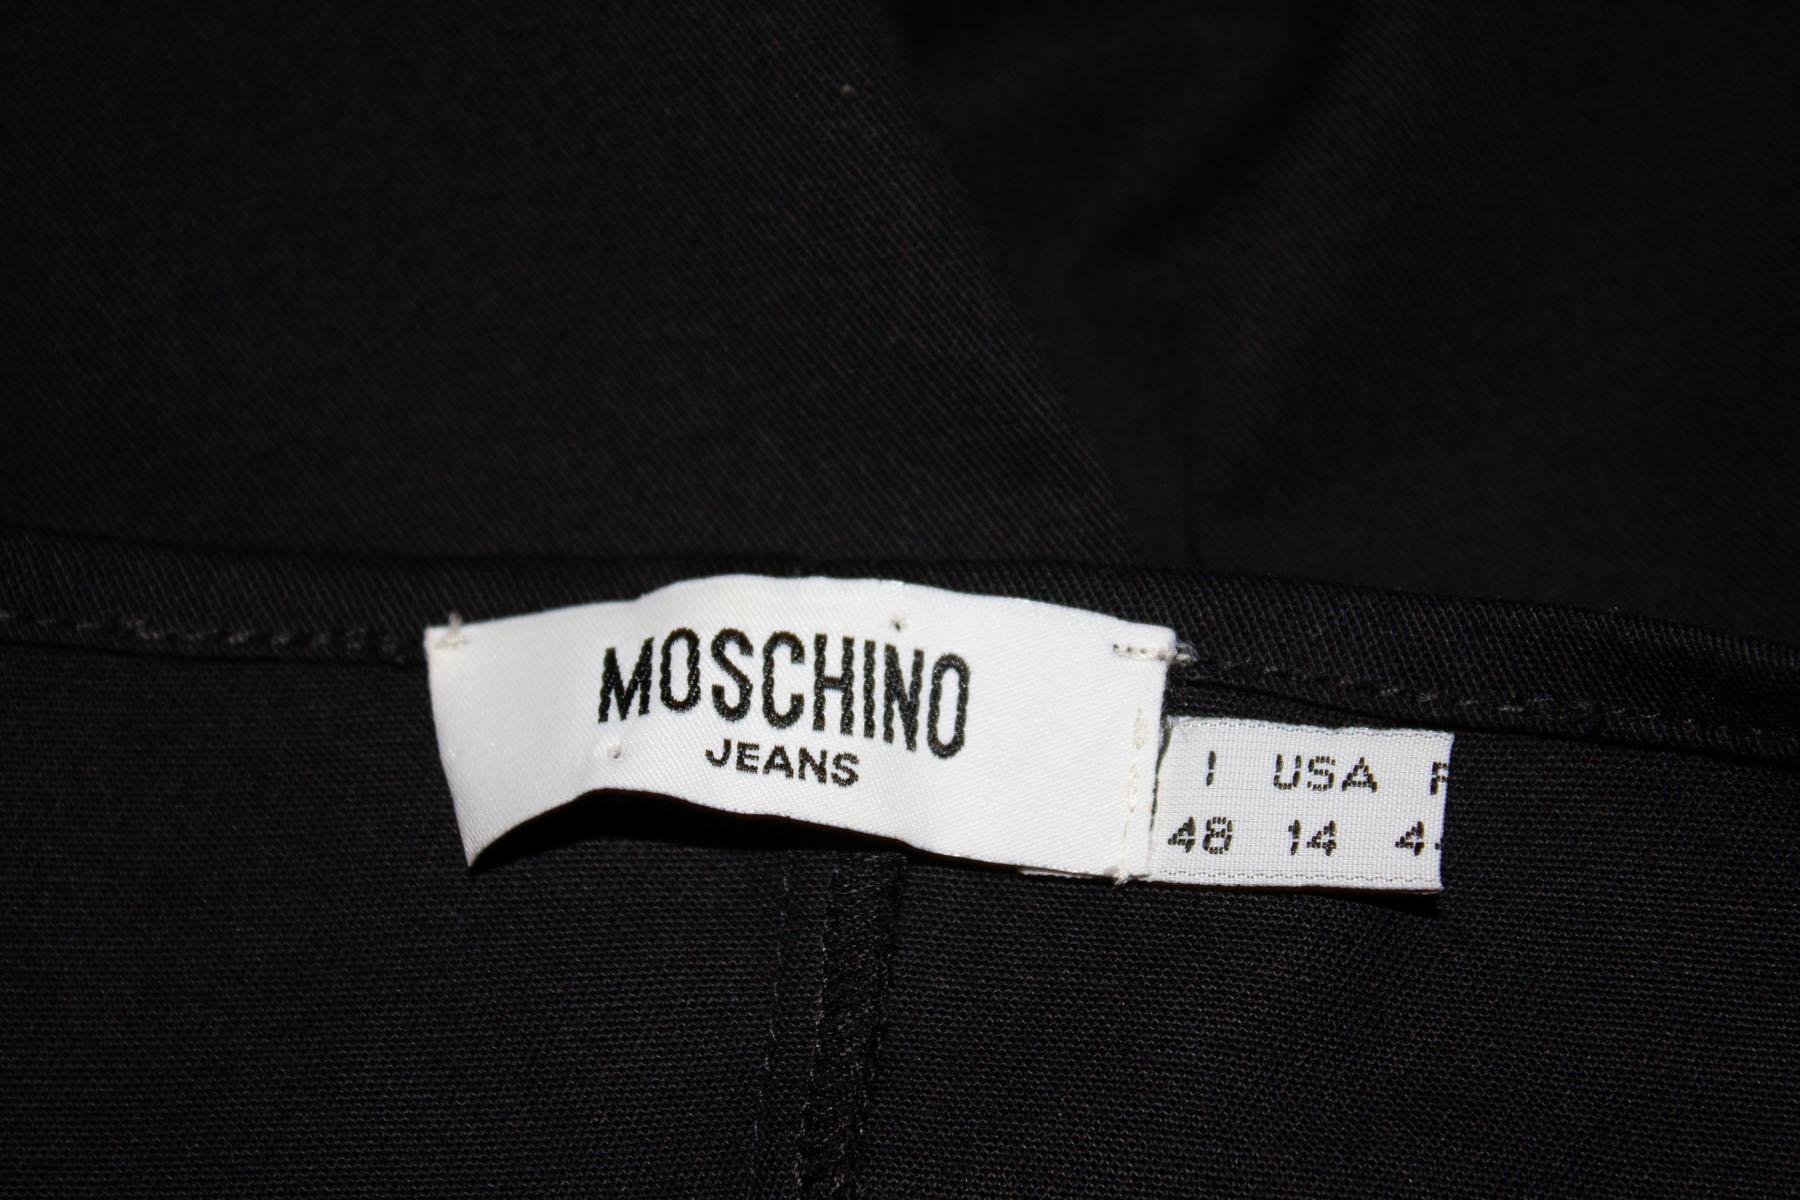 Une robe soleil en coton noir, amusante et facile à porter, signée Moschino. La robe est dotée d'un col licou, d'une ouverture zippée sur le côté et d'une fermeture à glissière.  n'est pas doublée, avec une fente de 6'' au dos. 
Mesures : Poitrine